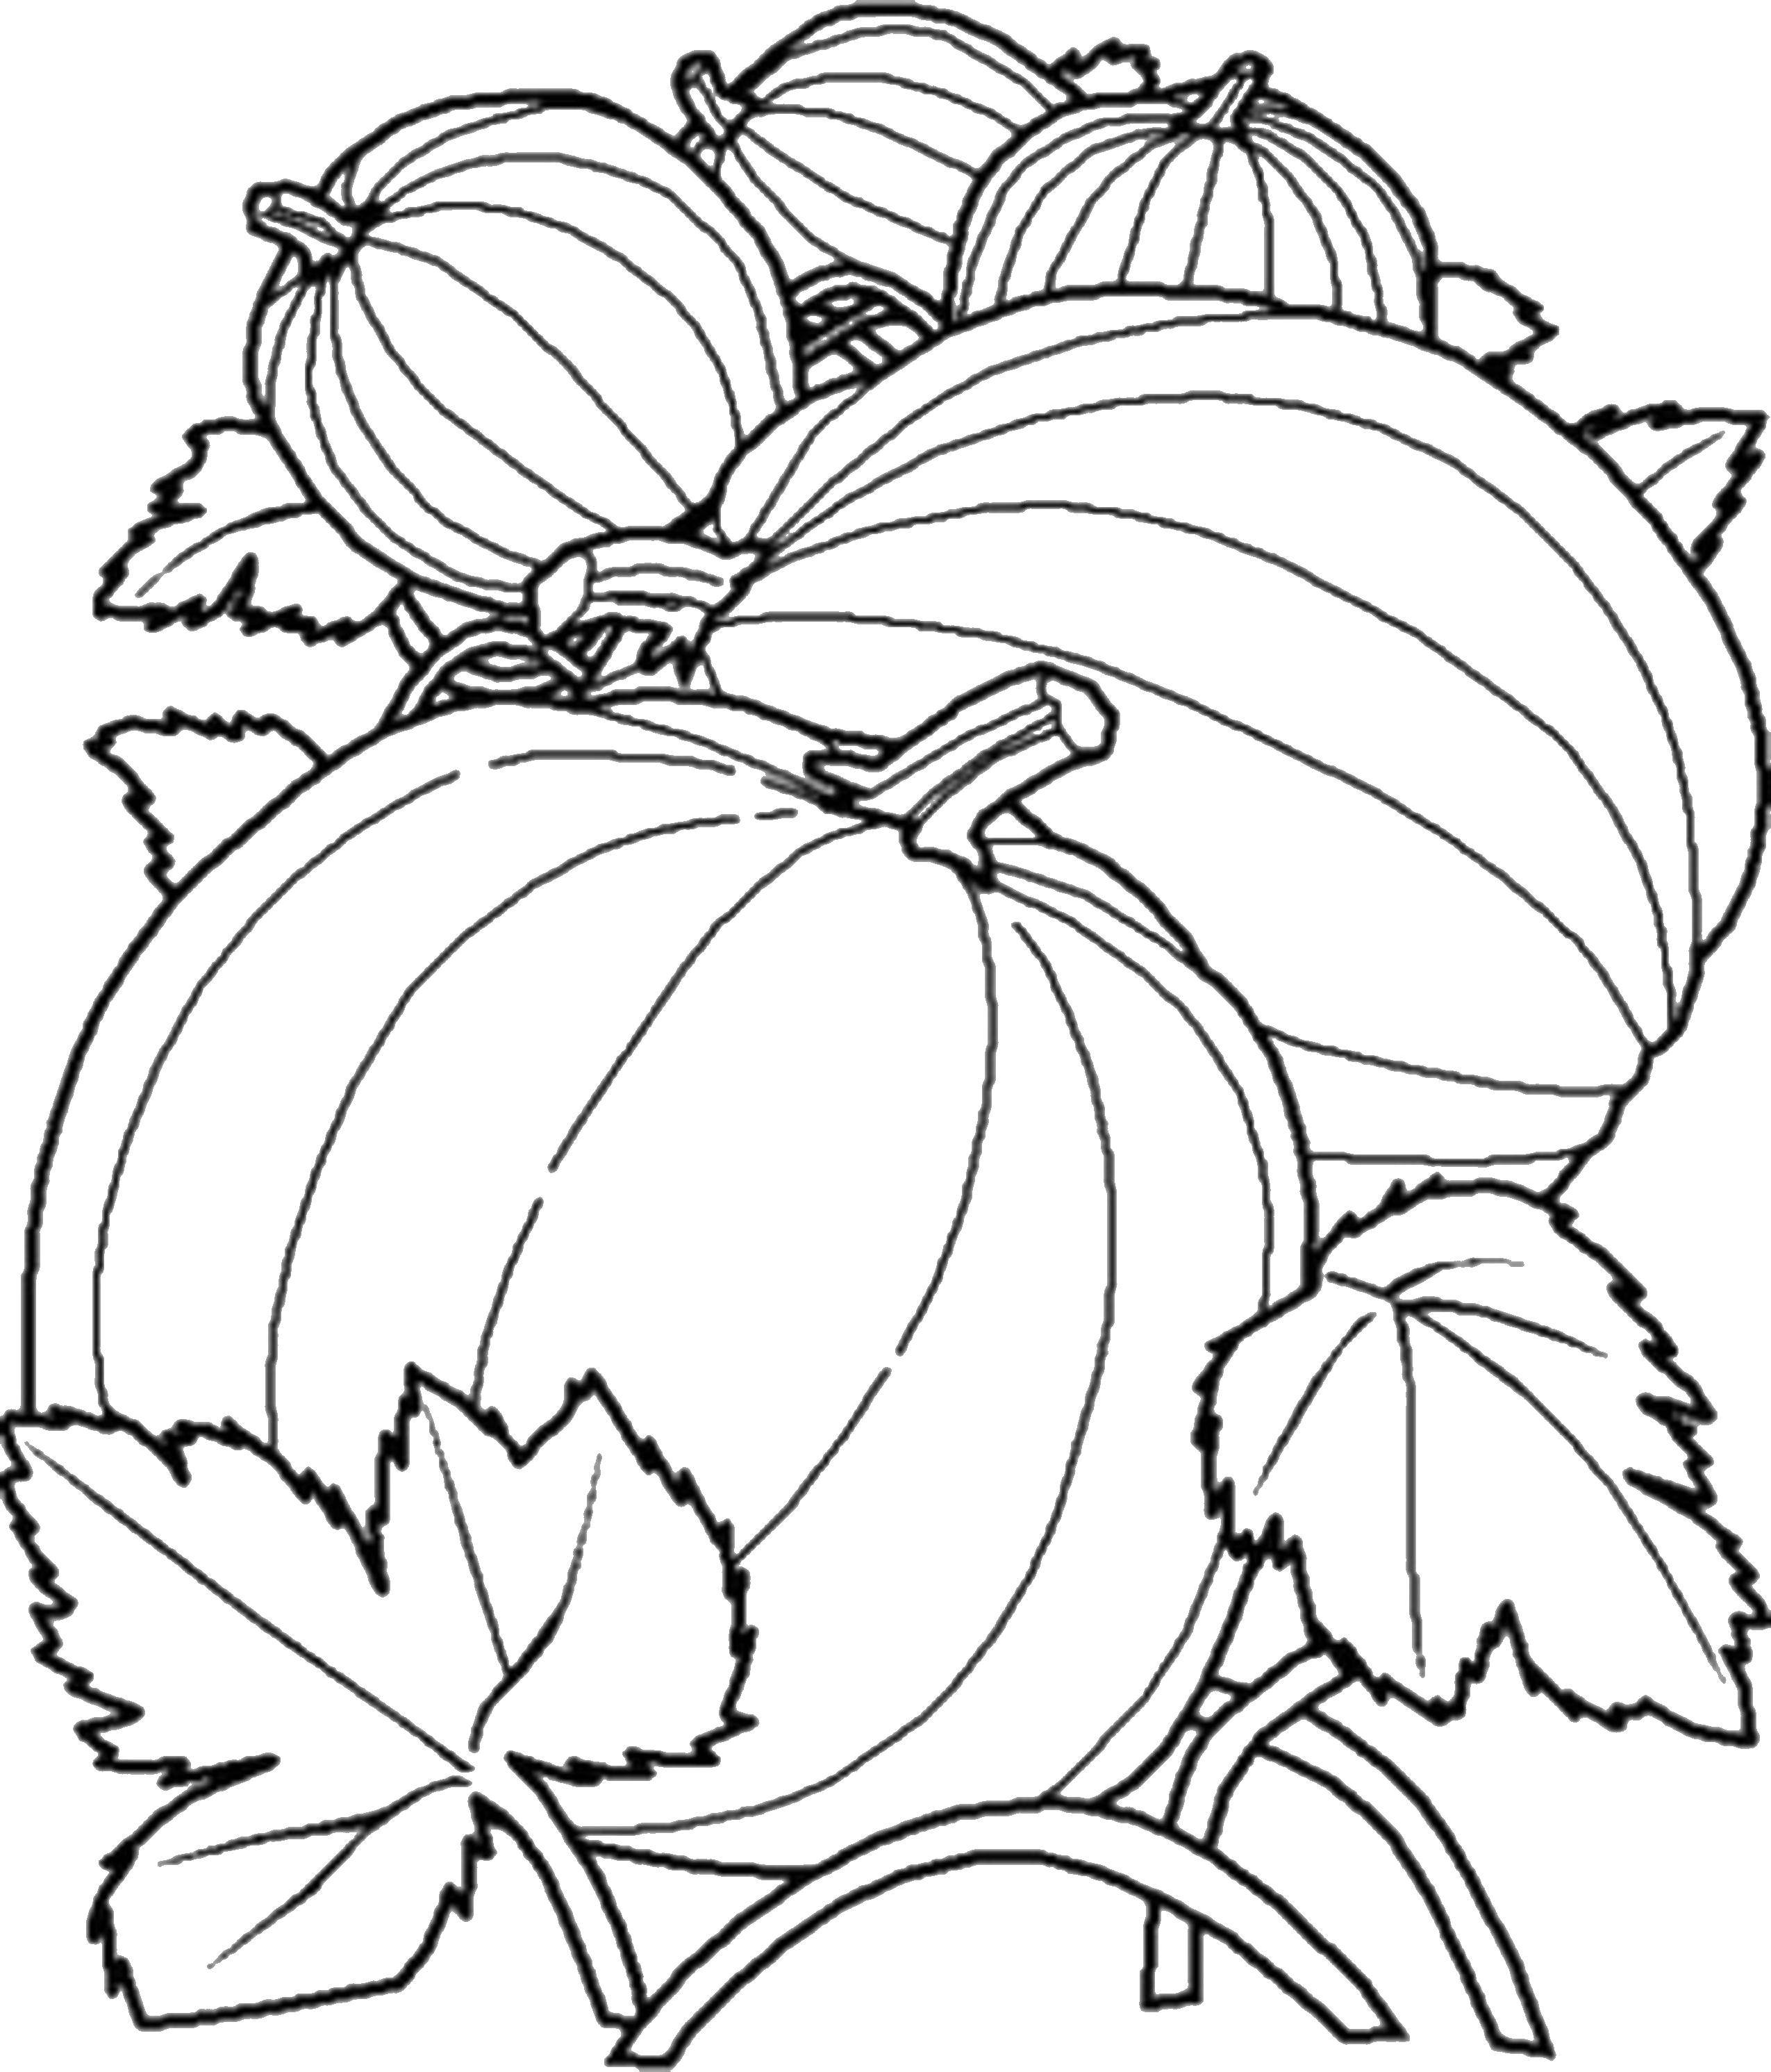 Coloring Pumpkin. Category vegetables. Tags:  vegetables, harvest, pumpkin.